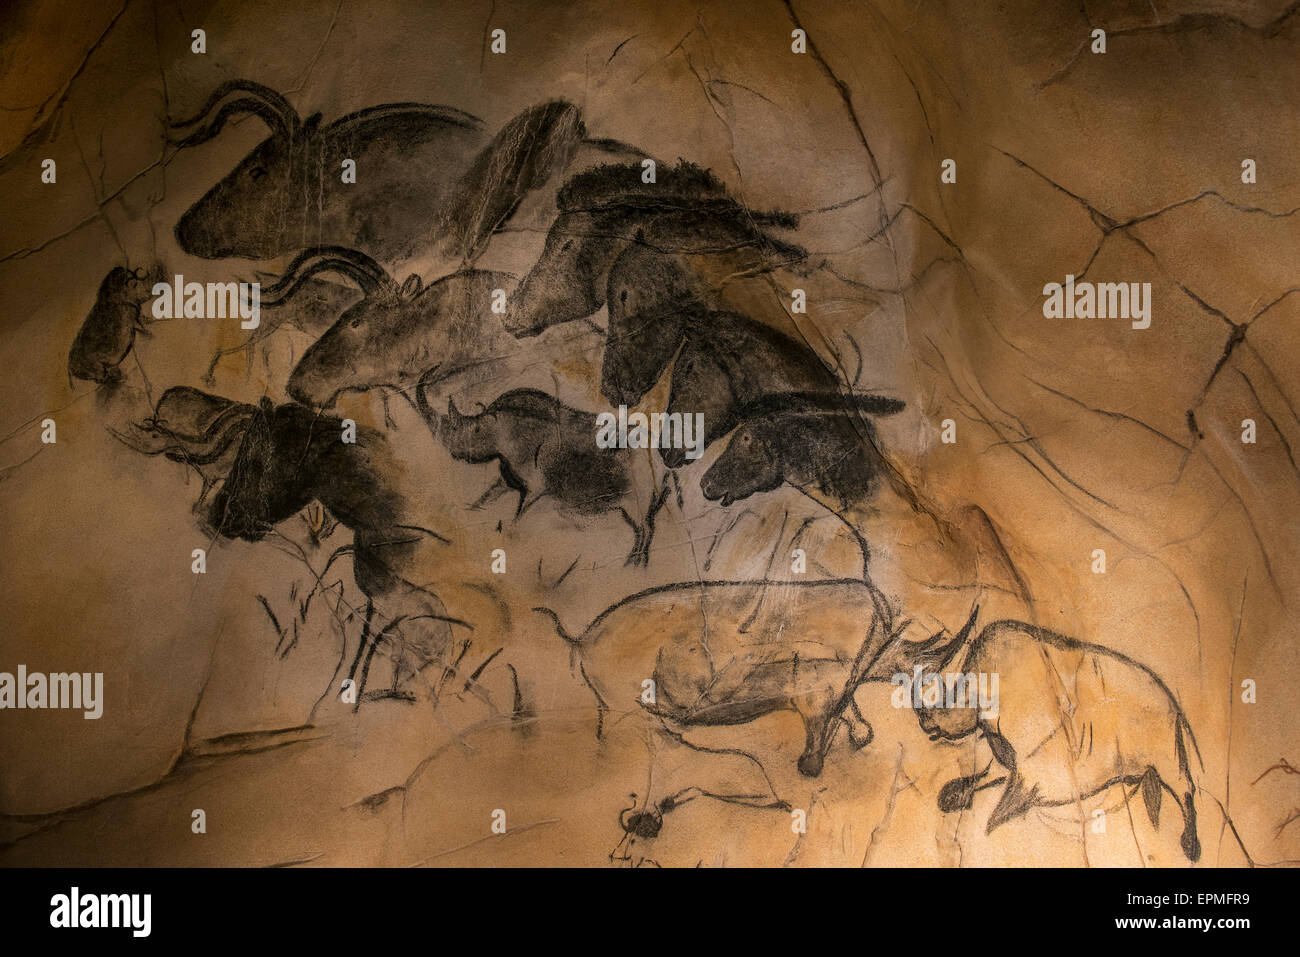 Réplique de peintures rupestres préhistoriques de la grotte Chauvet, Ardèche, France, montrant rhinocéros laineux, d'aurochs et de chevaux sauvages Banque D'Images